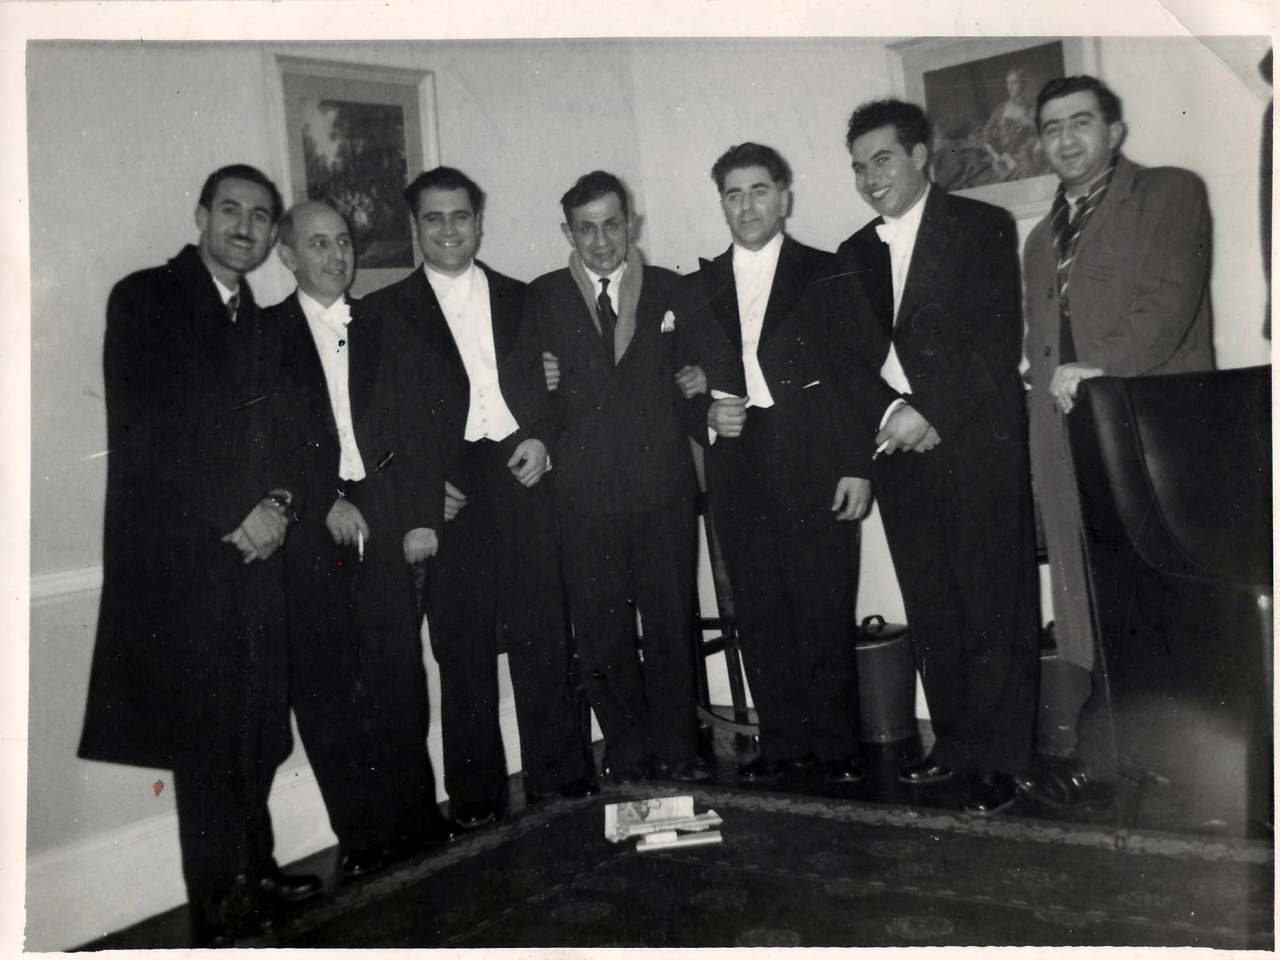 Լուսանկար. Կոմիտասի անվ. լարային քառյակի երաժիշտները լոնդոնահայ Հովհ. Չալգյանի հետ, «Վիկտոր հոլ» համերգասրահում իրենց համերգից հետո